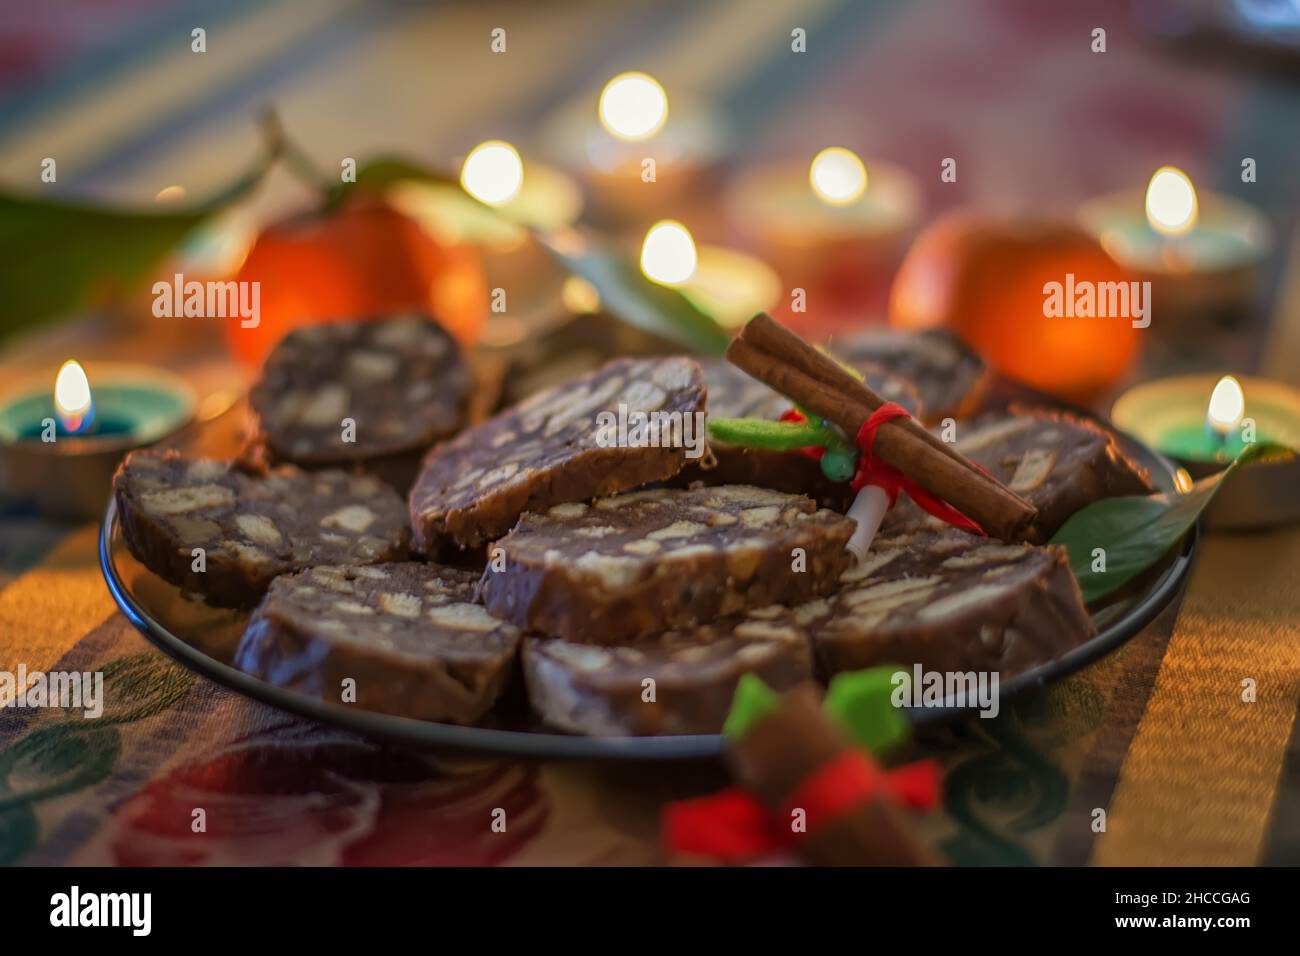 Weihnachtsplätzchen. Stapel von Chocolate Chip Cookies, Zimt, Anise, verschiedene Weihnachtsdekorationen und brennende Kerzen. Selektiver Fokus. Stockfoto